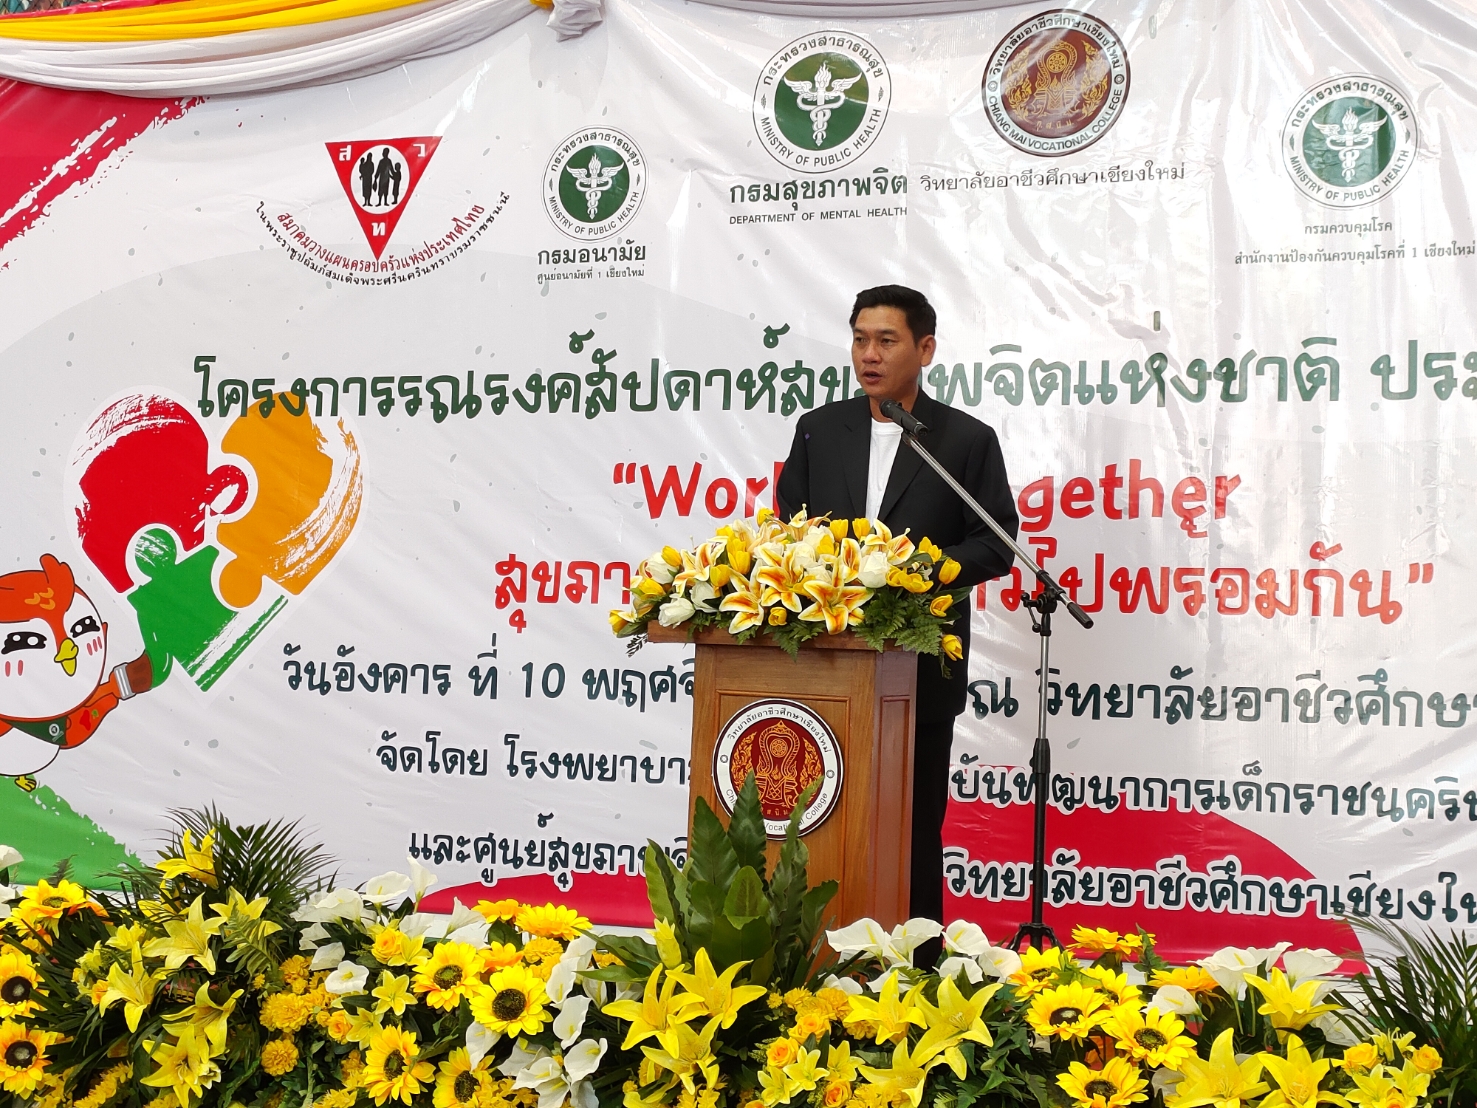 ภาครัฐ  ภาคประชาสังคม และองค์กรสื่อสารมวลชน  ร่วมแรงร่วมใจ “เสริมสร้างความรอบรู้และสร้างพลังในวัยรุ่น”  ในงานสัปดาห์สุขภาพจิตแห่งชาติ ประจำปี 2563  “Working Together สุขภาพจิตไทย ก้าวไปพร้อมกัน”